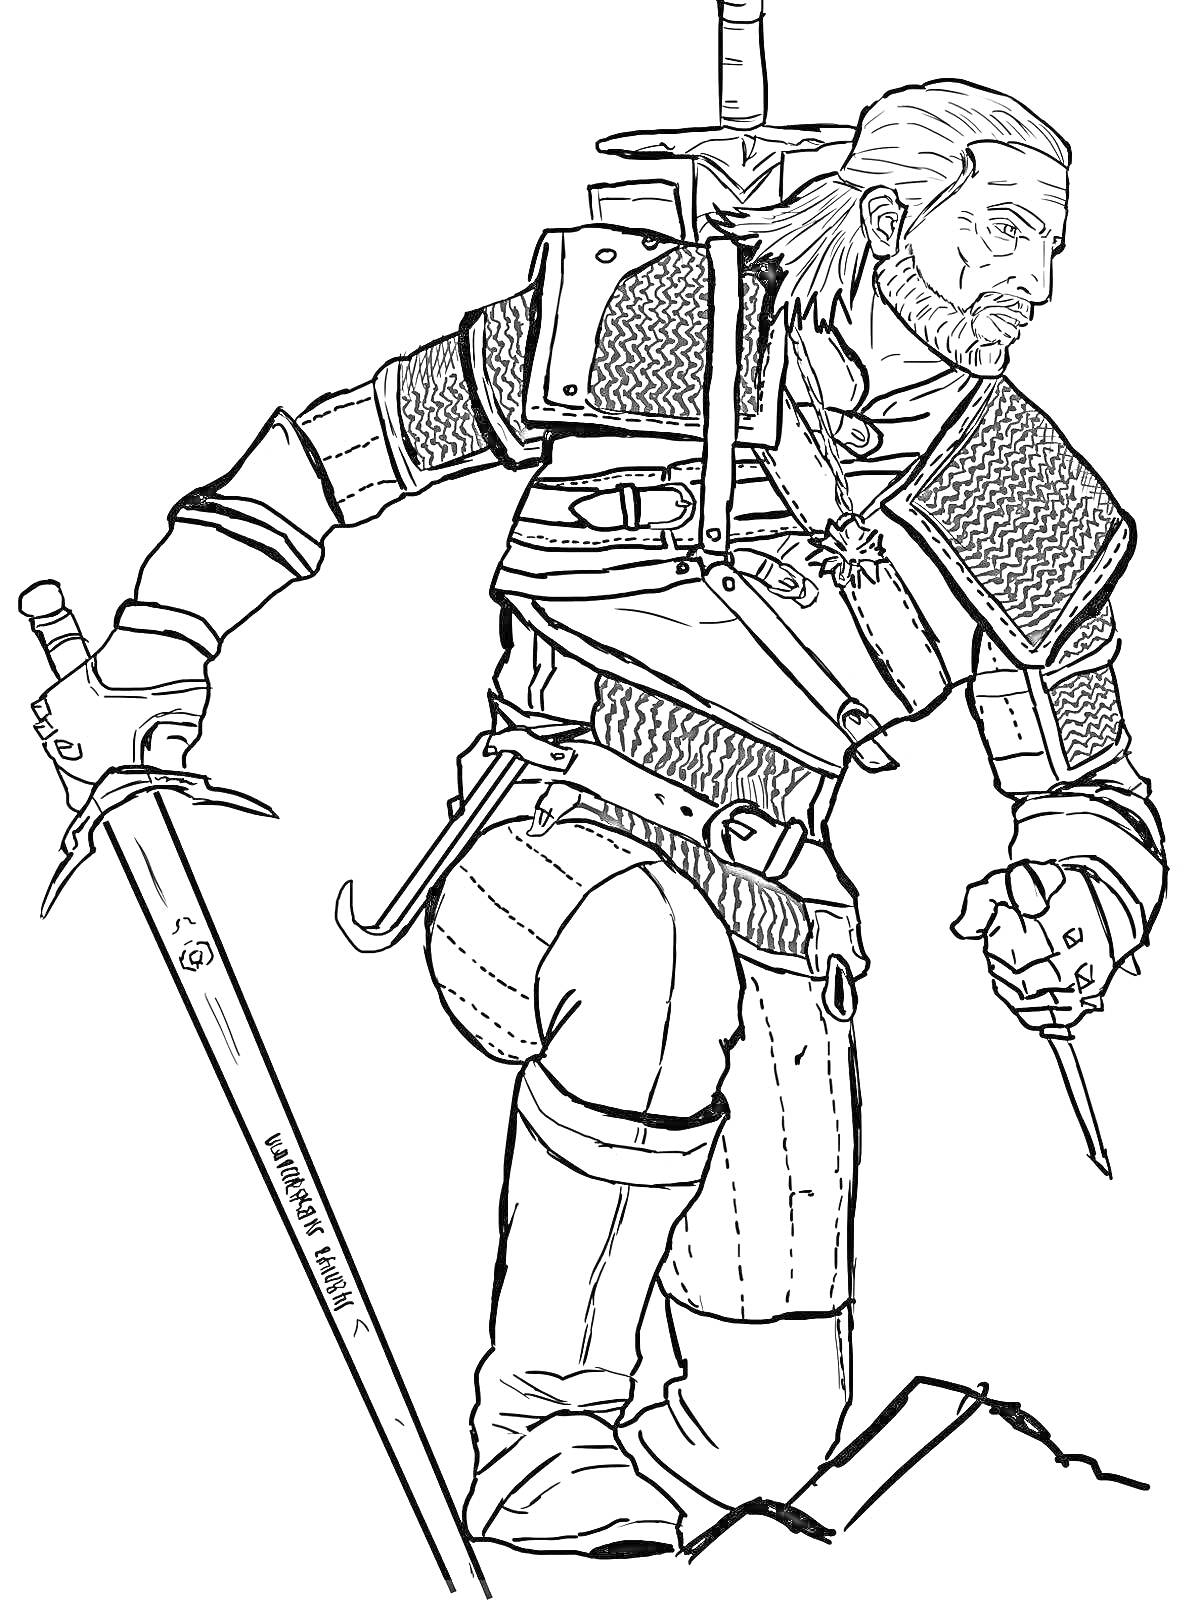 РаскраскаВедьмак в боевой стойке с мечом и кинжалом